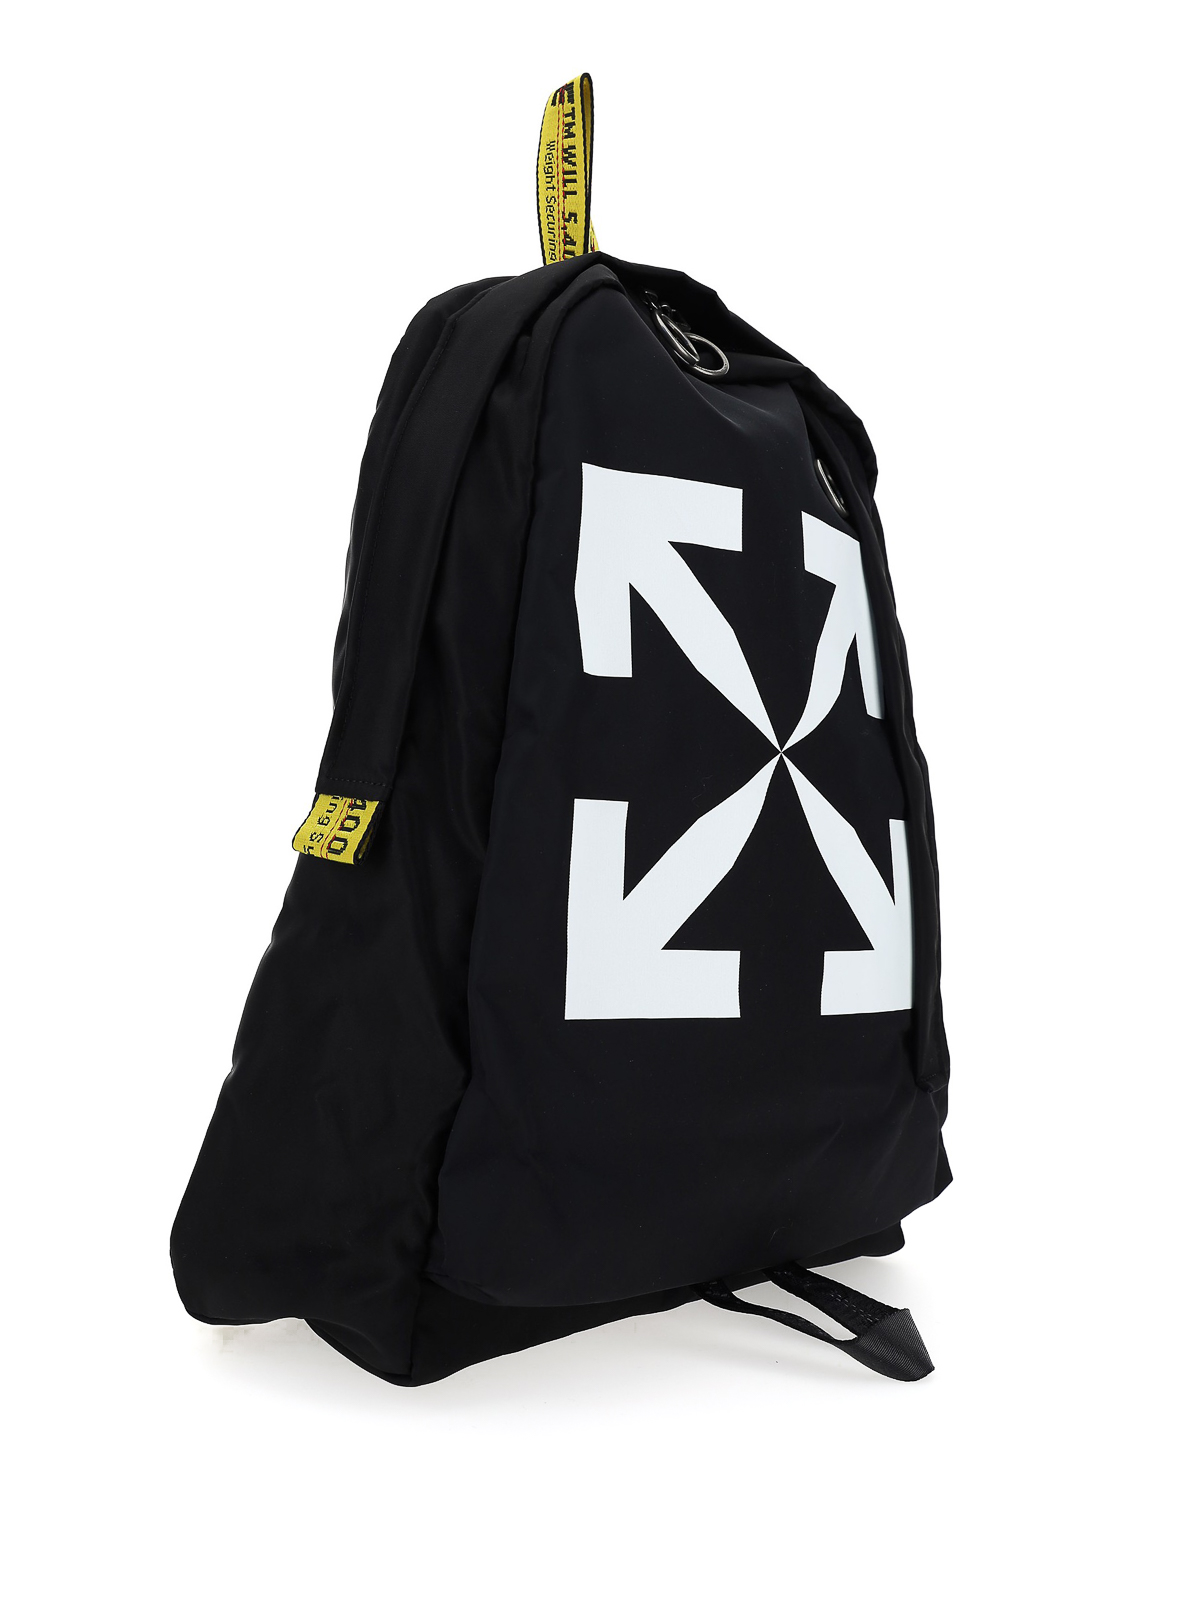 Arrows print backpack